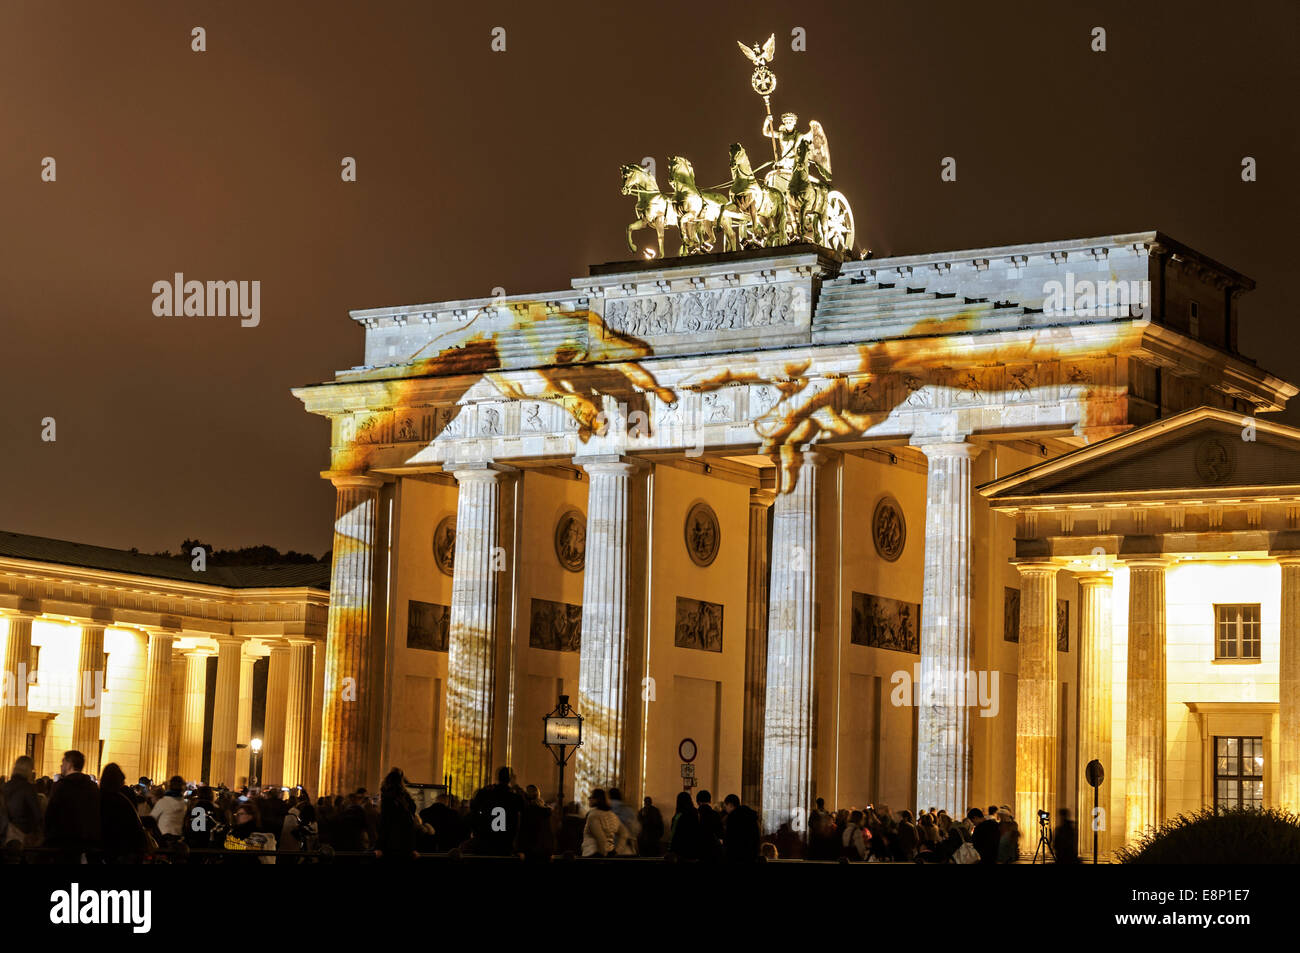 eine Menge Leute bewundern das Festival of Lights, das illuminierte Brandenburger Tor in Berlin redaktionelle Nutzung Stockfoto